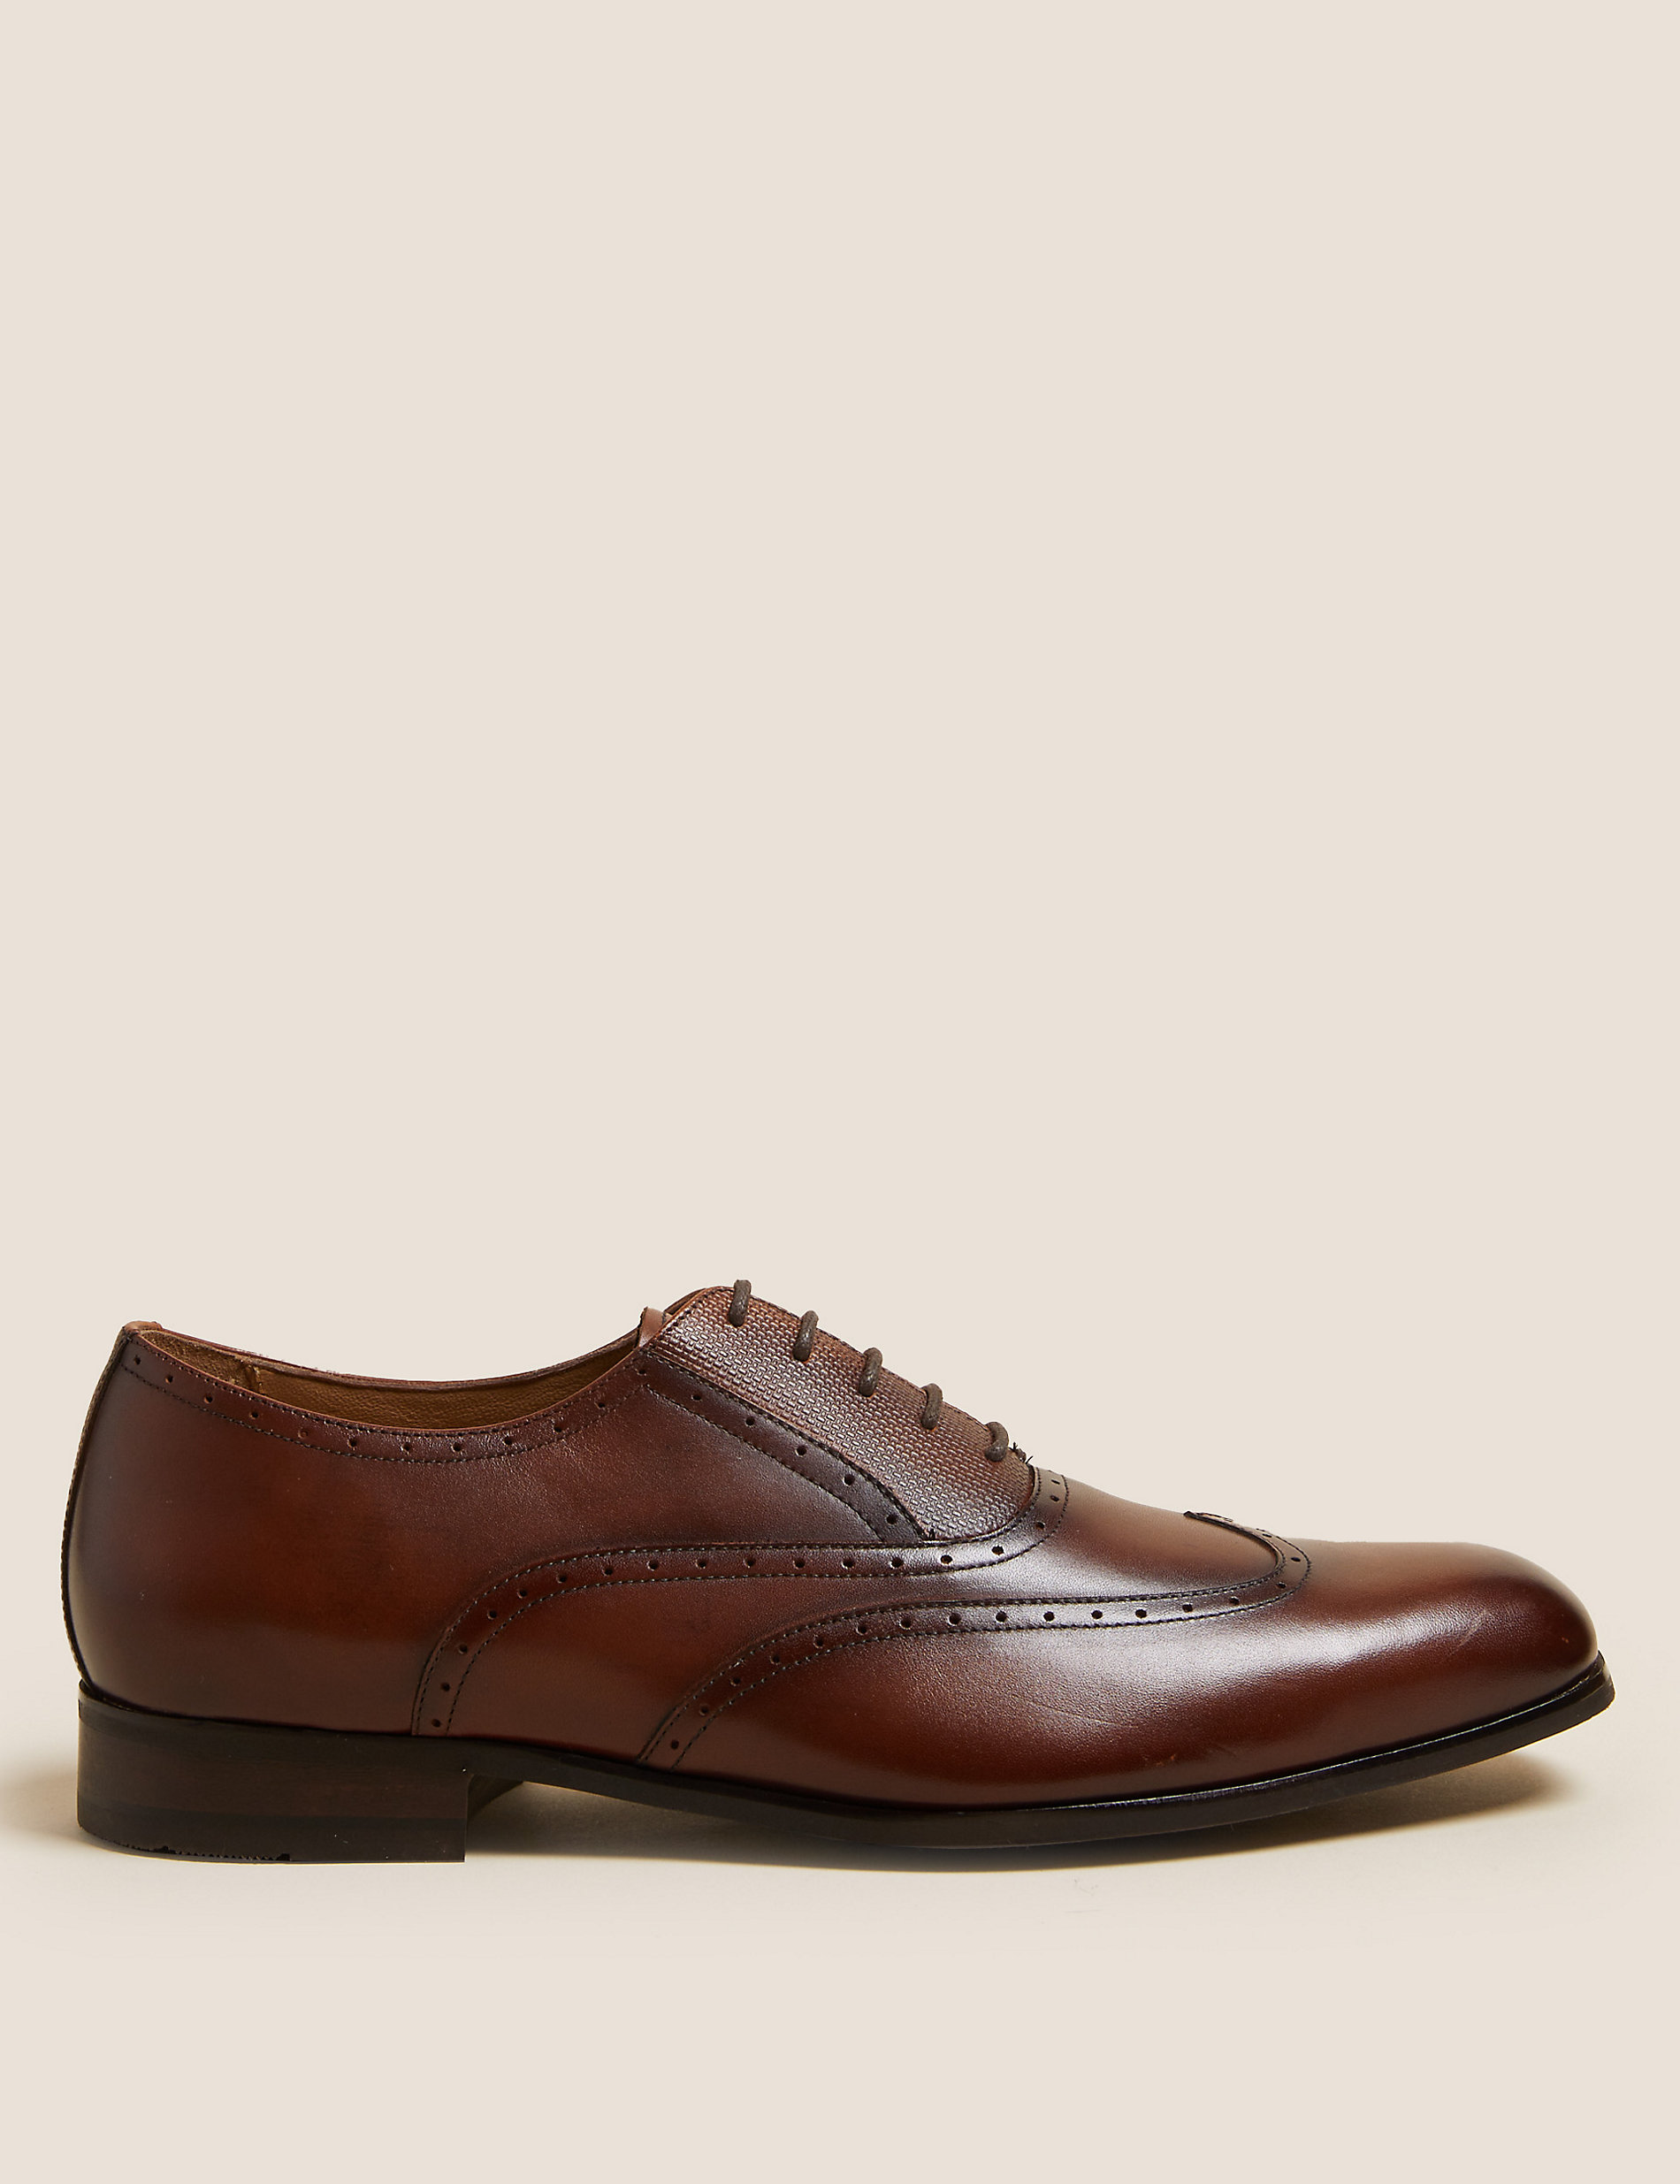 Men's Wingtip Oxford Leather Boot Schoenen Herenschoenen Laarzen Chocolate Brown Size10.5 